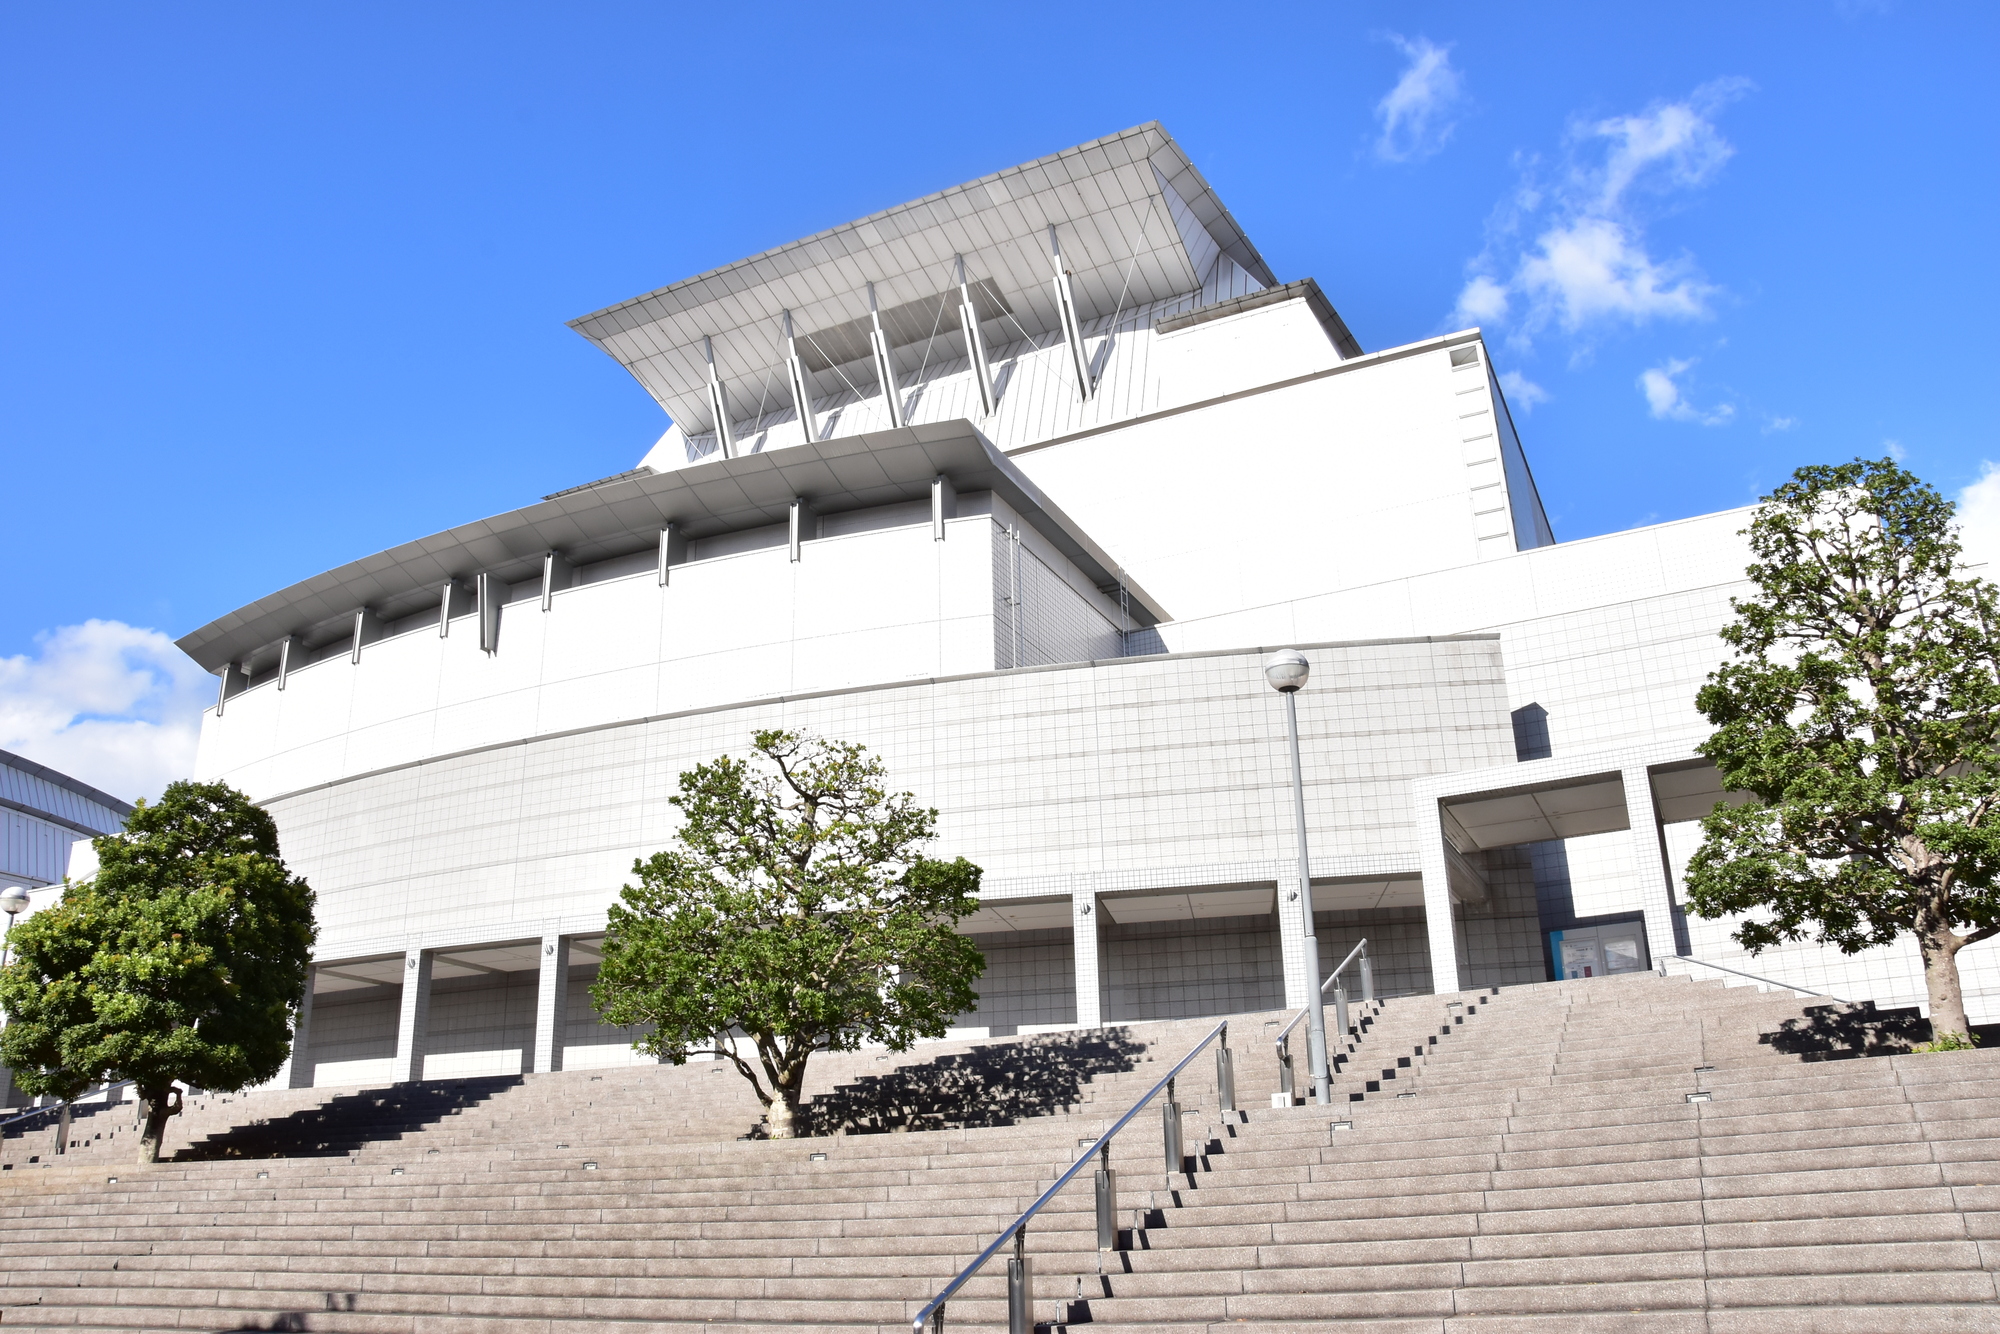 滋賀県立芸術劇場びわ湖ホールの座席表と会場情報